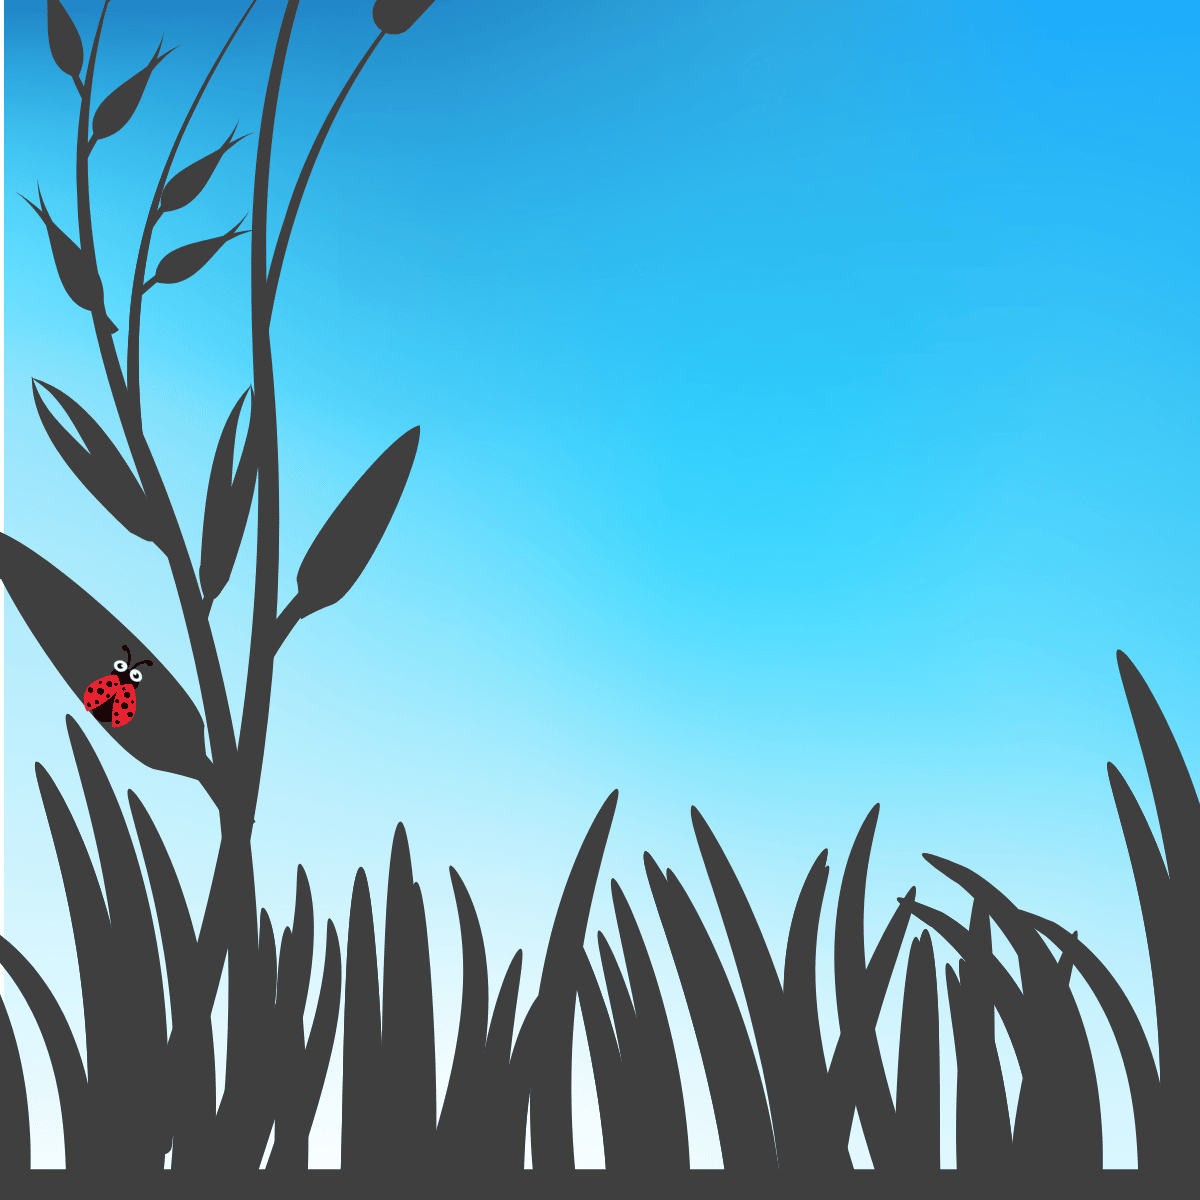 Ladybird on grass graphics